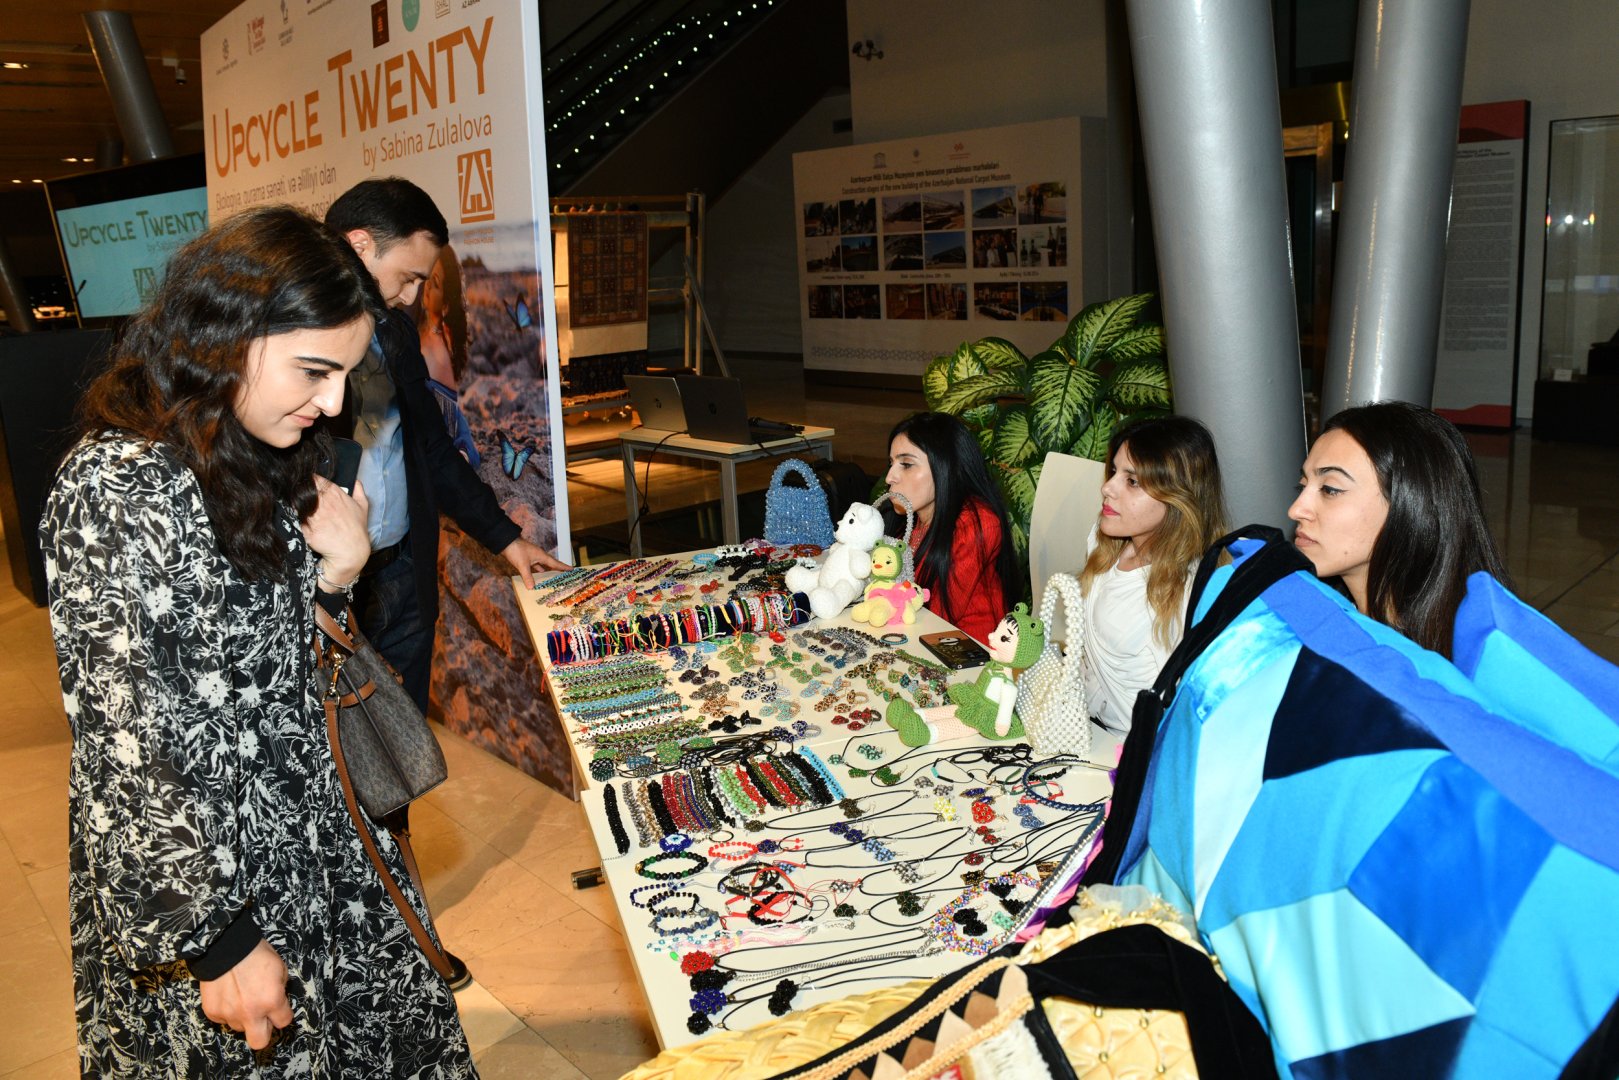 В Баку представлена эко-мода Сабины Зулаловой  с элементами гурамы (ФОТО)